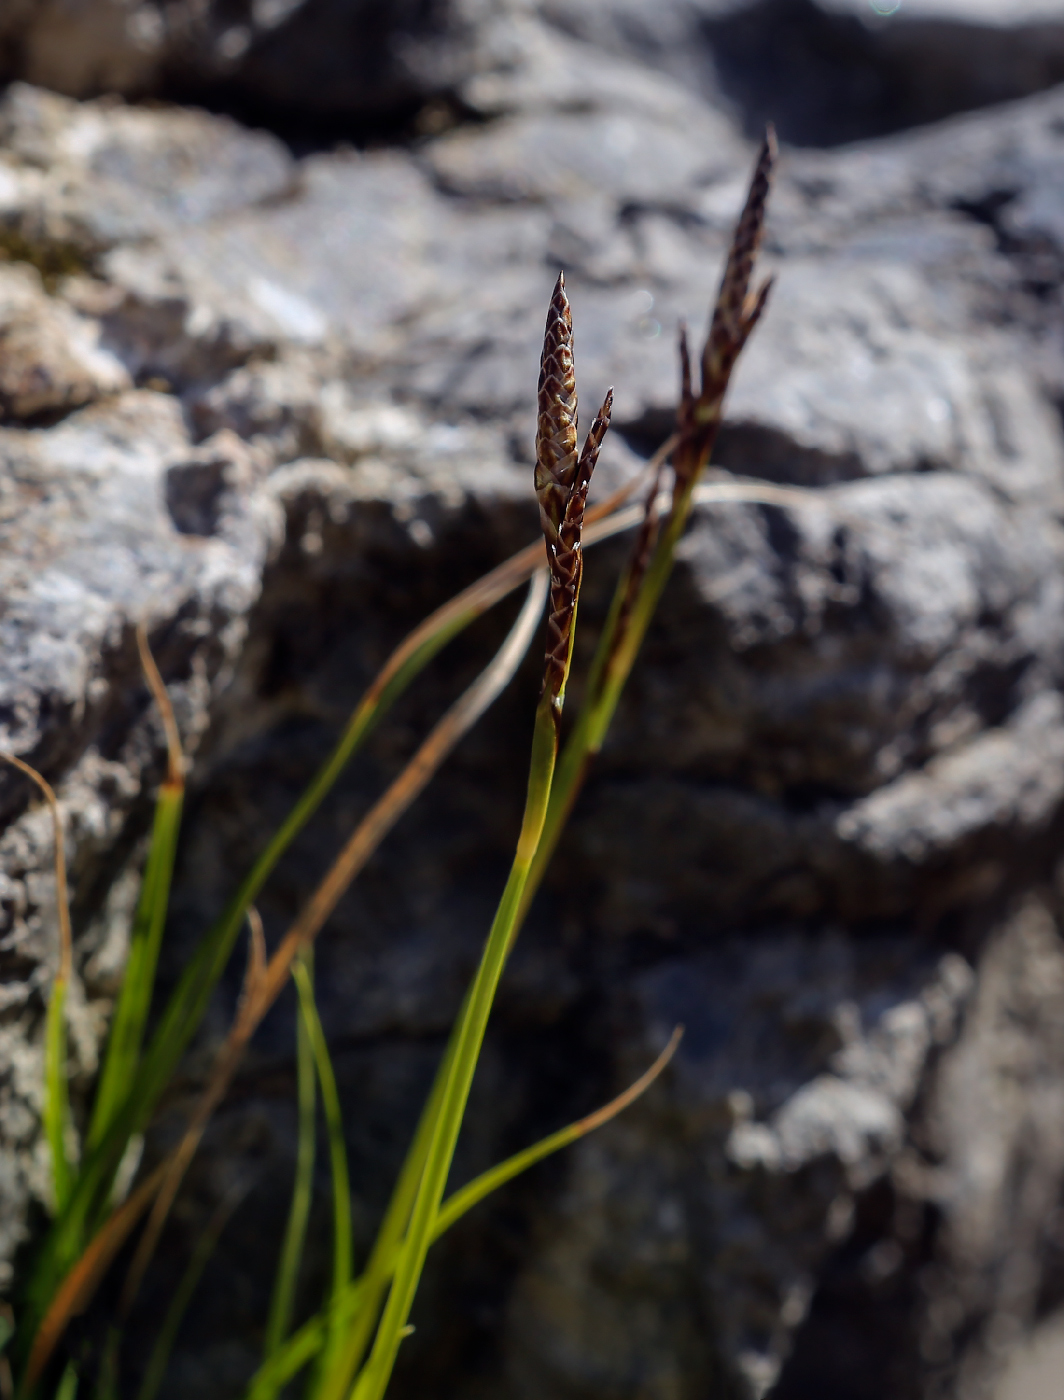 Image of genus Carex specimen.